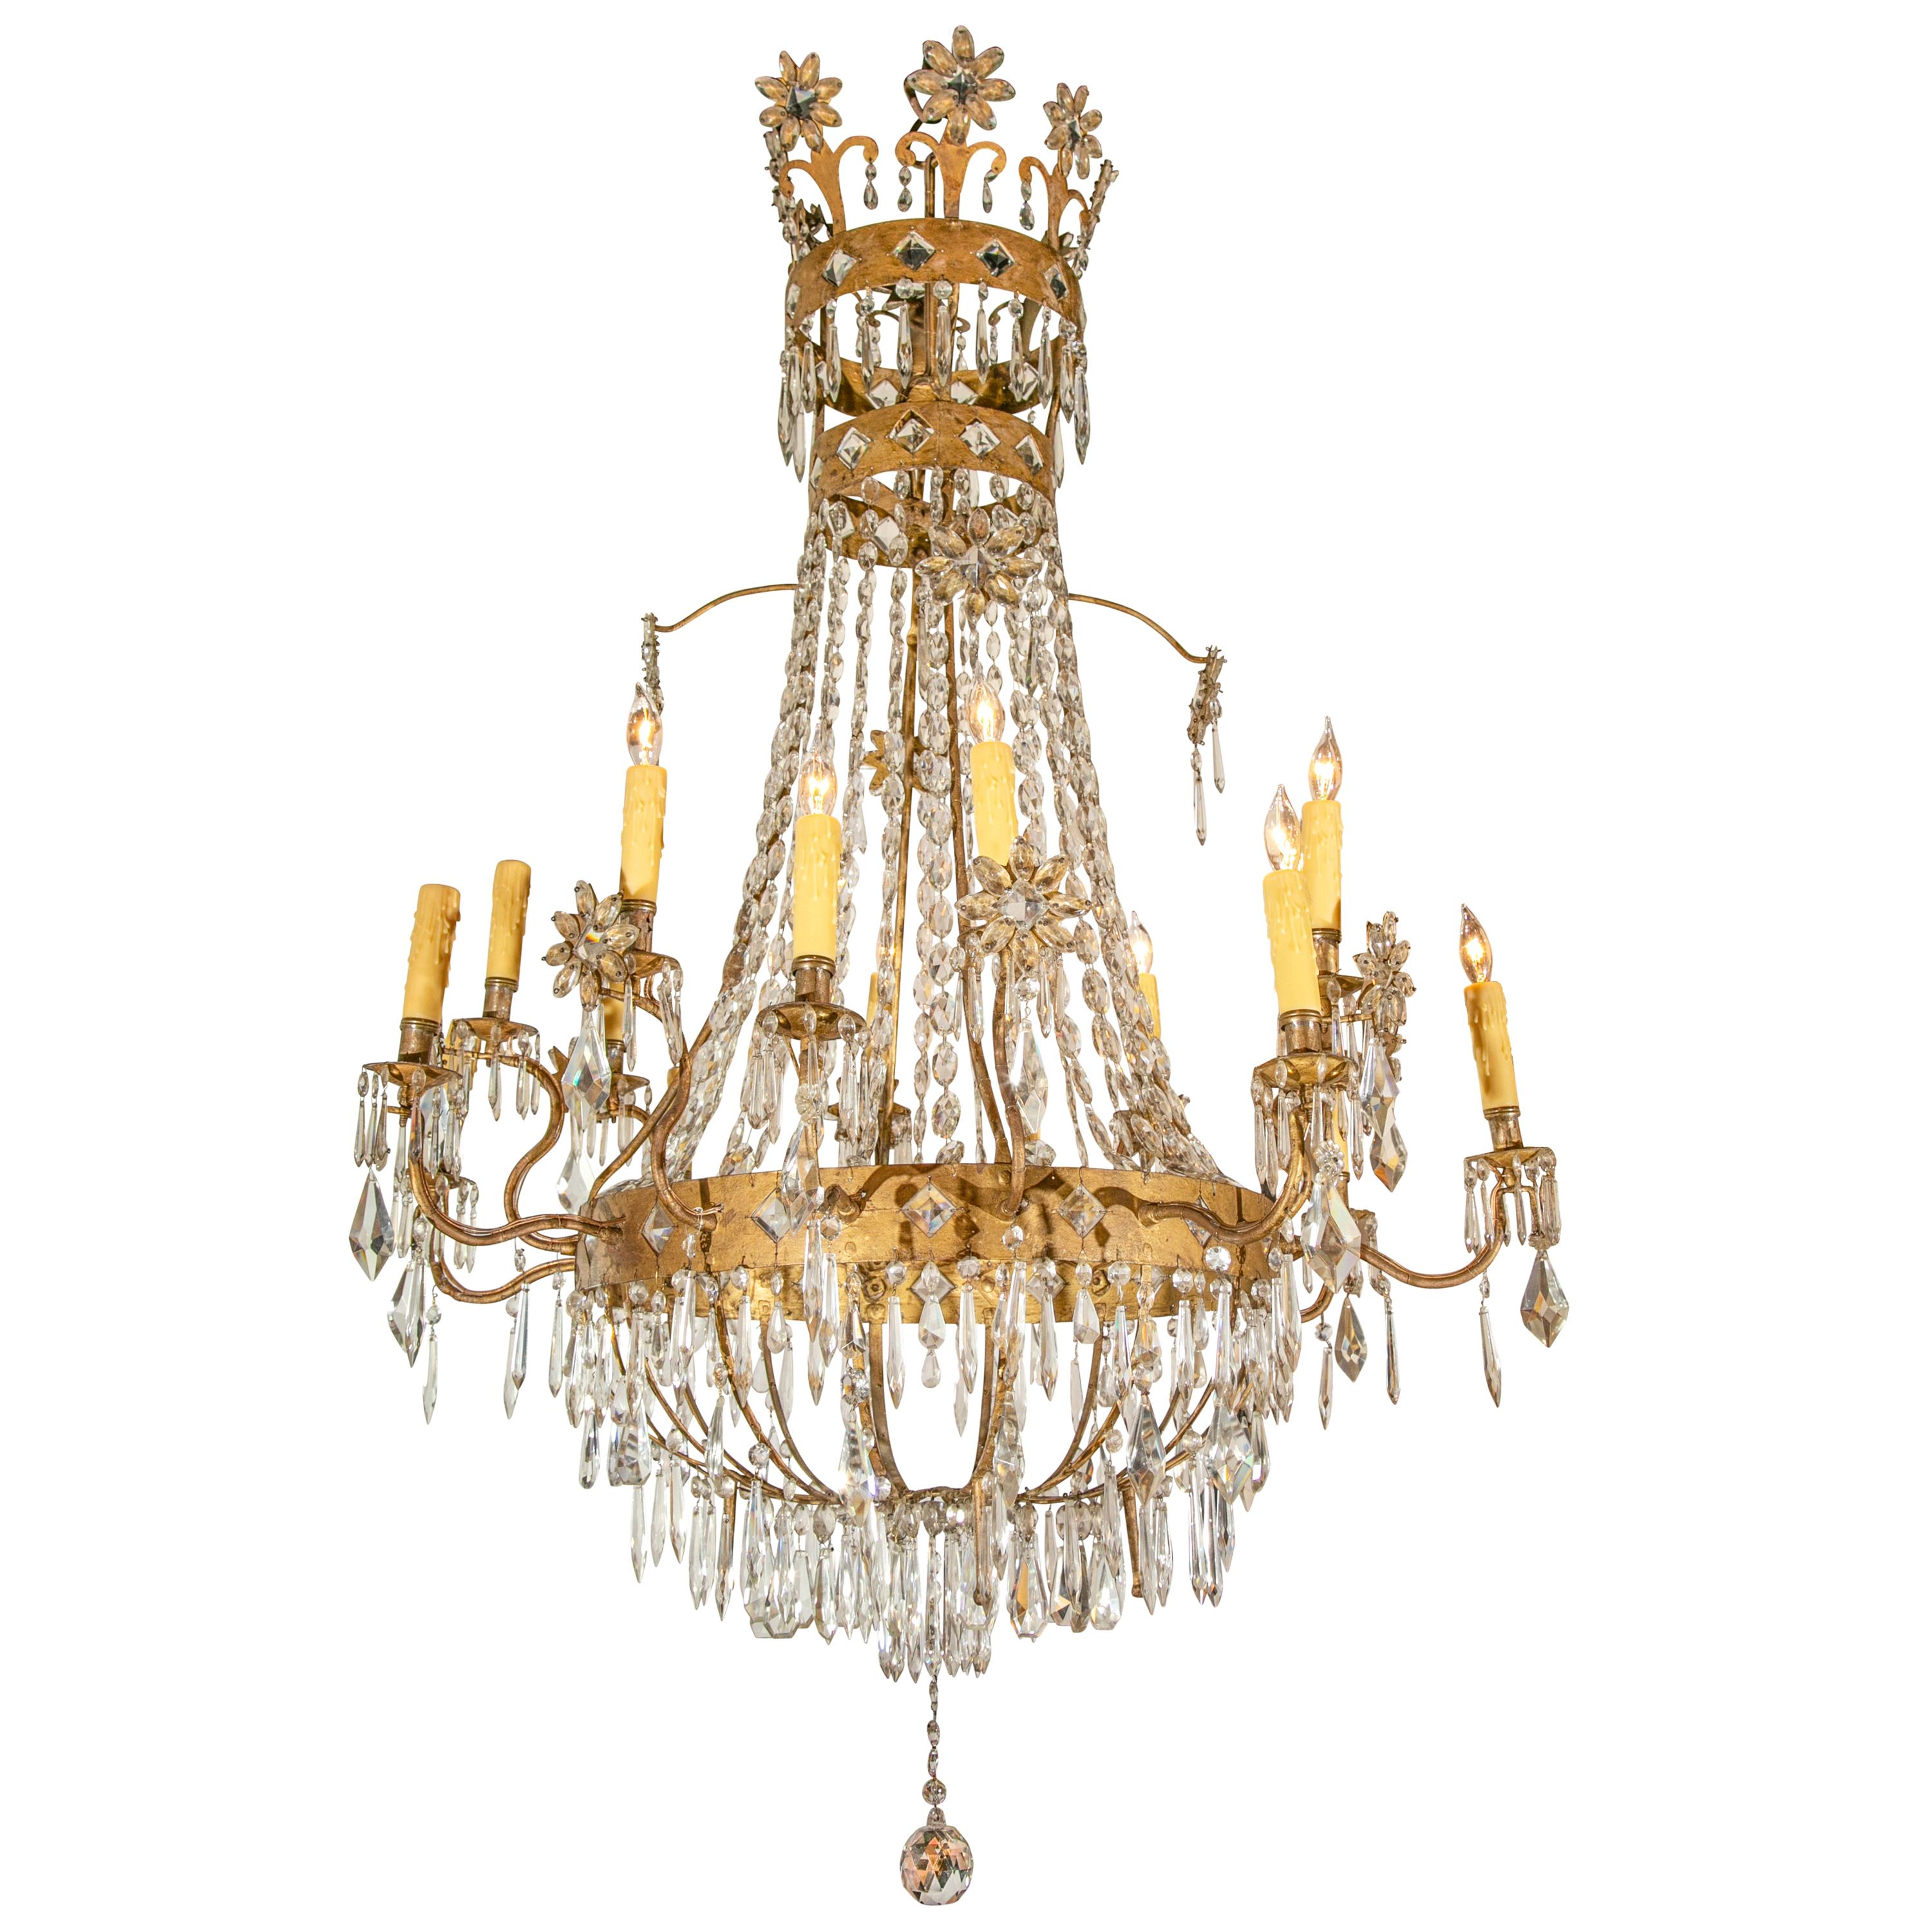 Lustre français de style Empire du 19e siècle à 16 lumières en cristal et métal doré